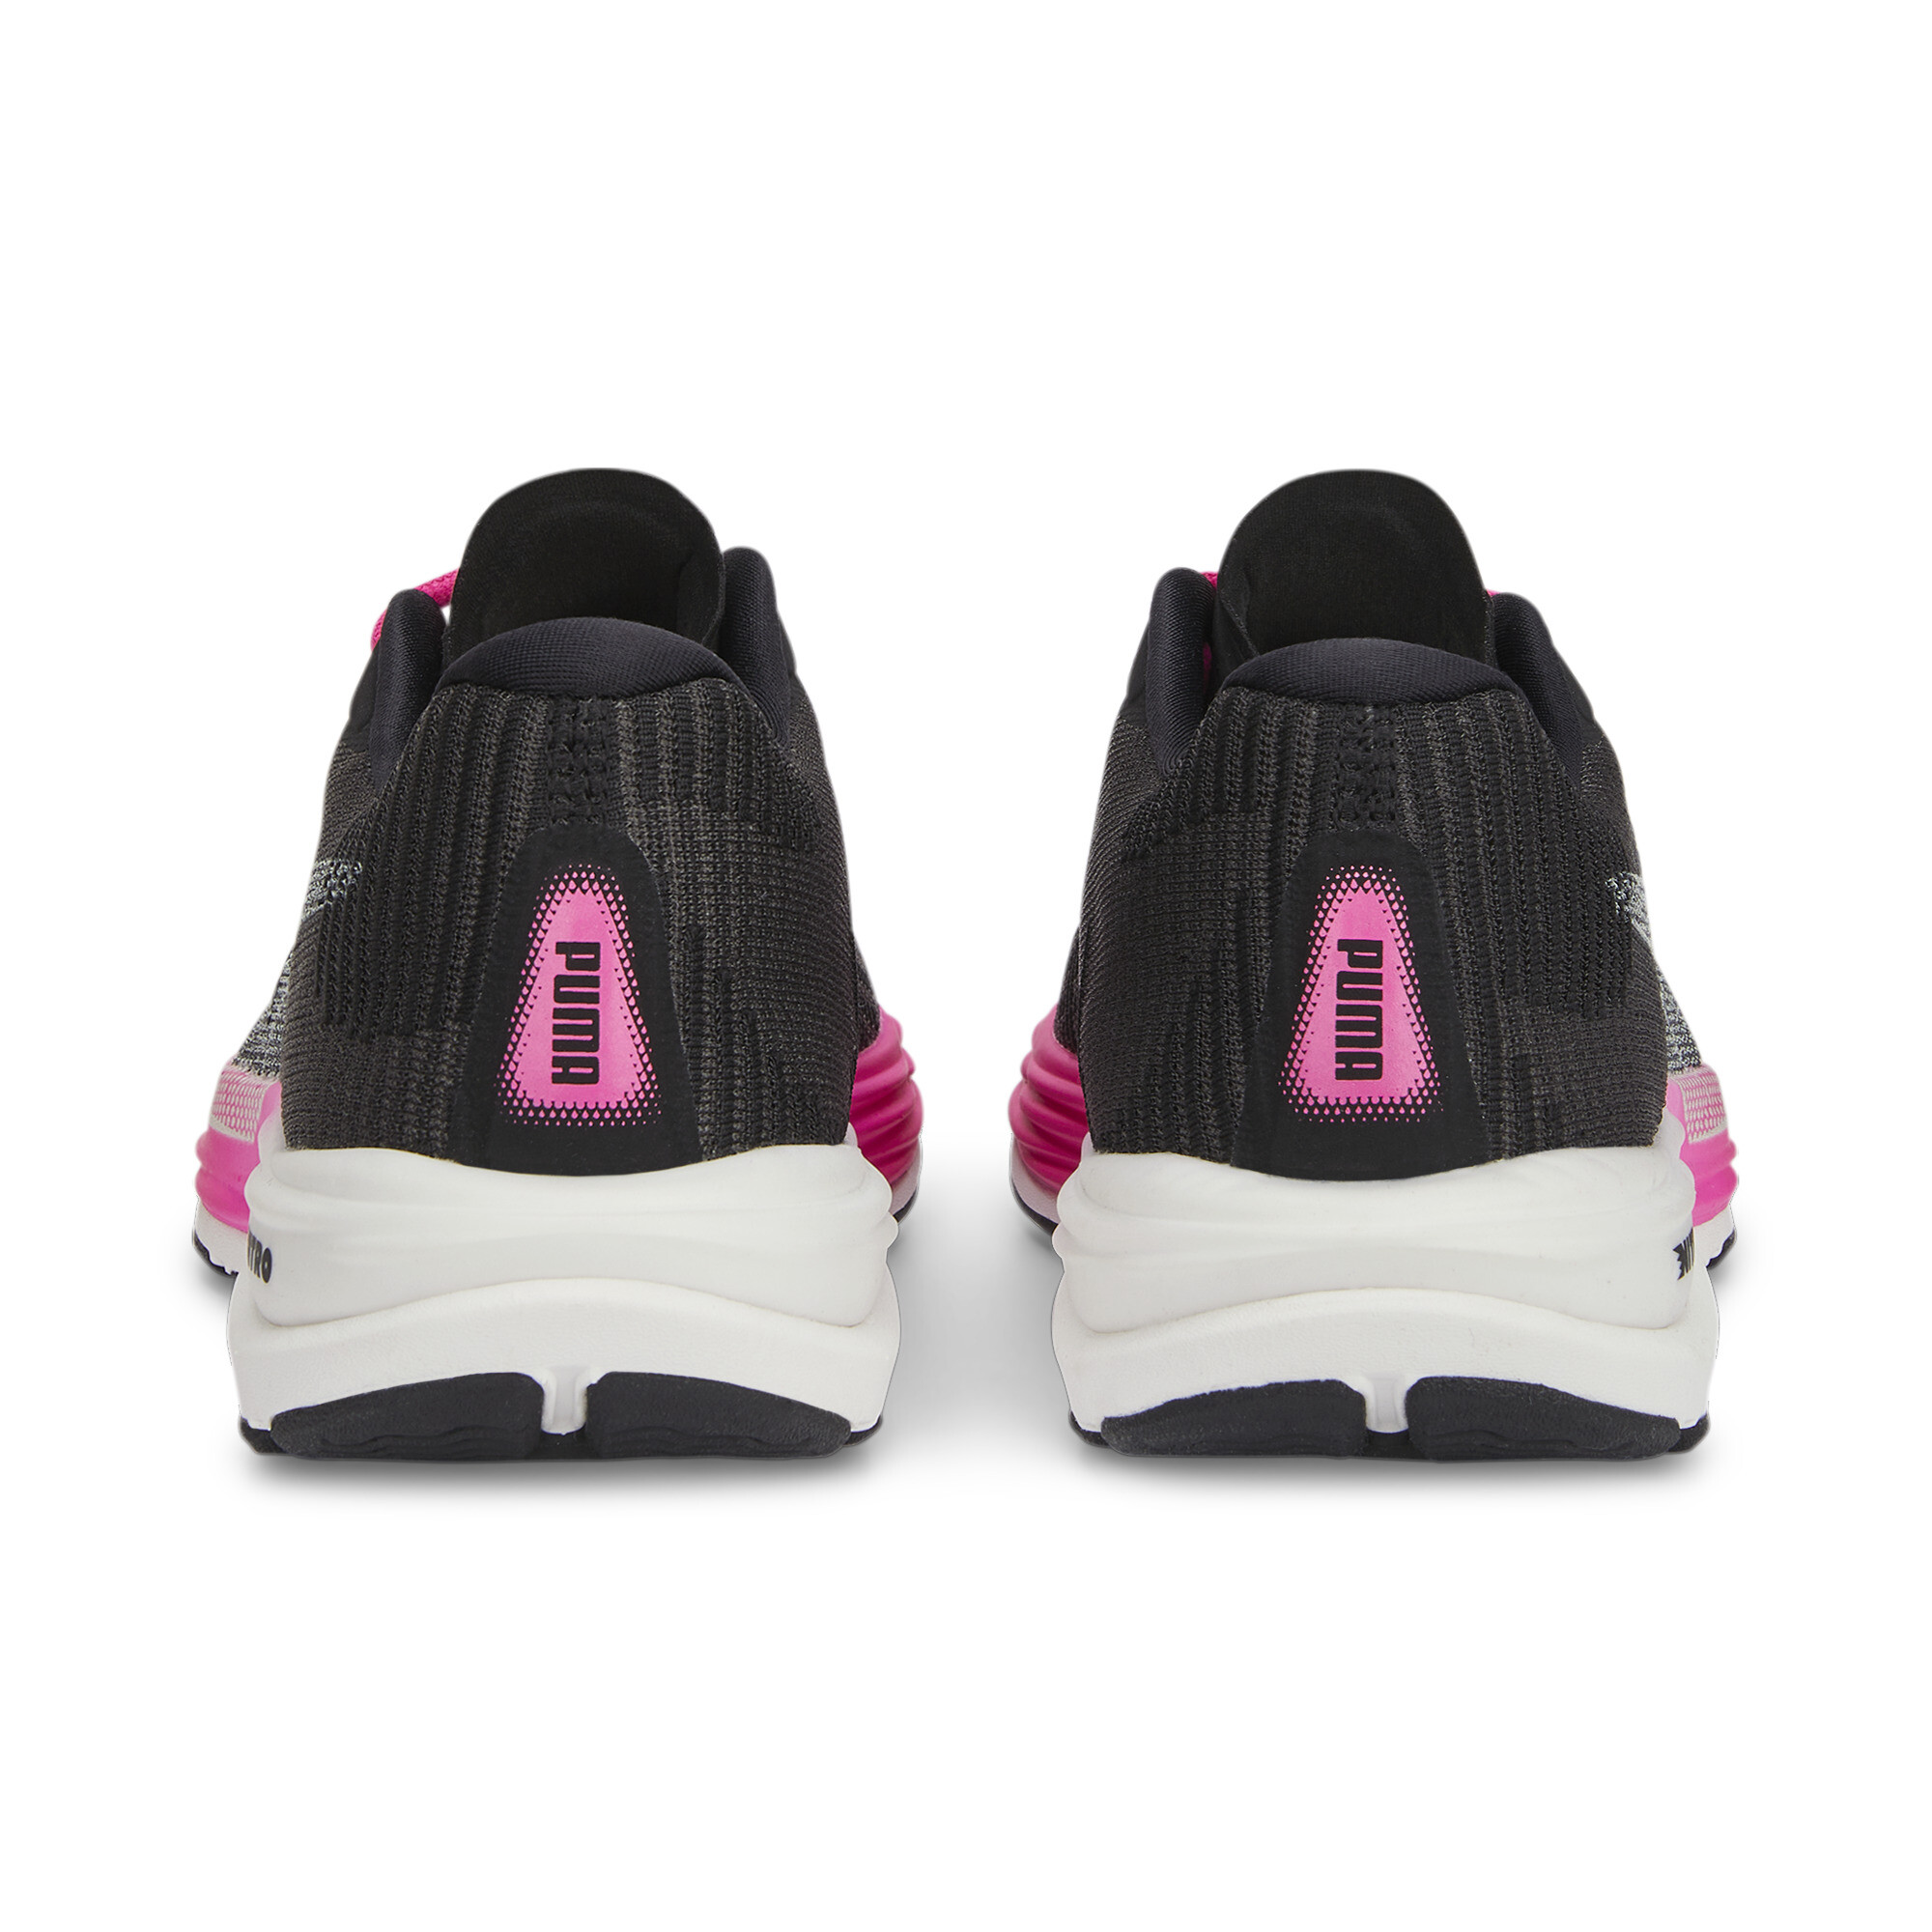 Women's PUMA Velocity NITRO 2 Fade Running Shoes Women In Black, Size EU 35.5